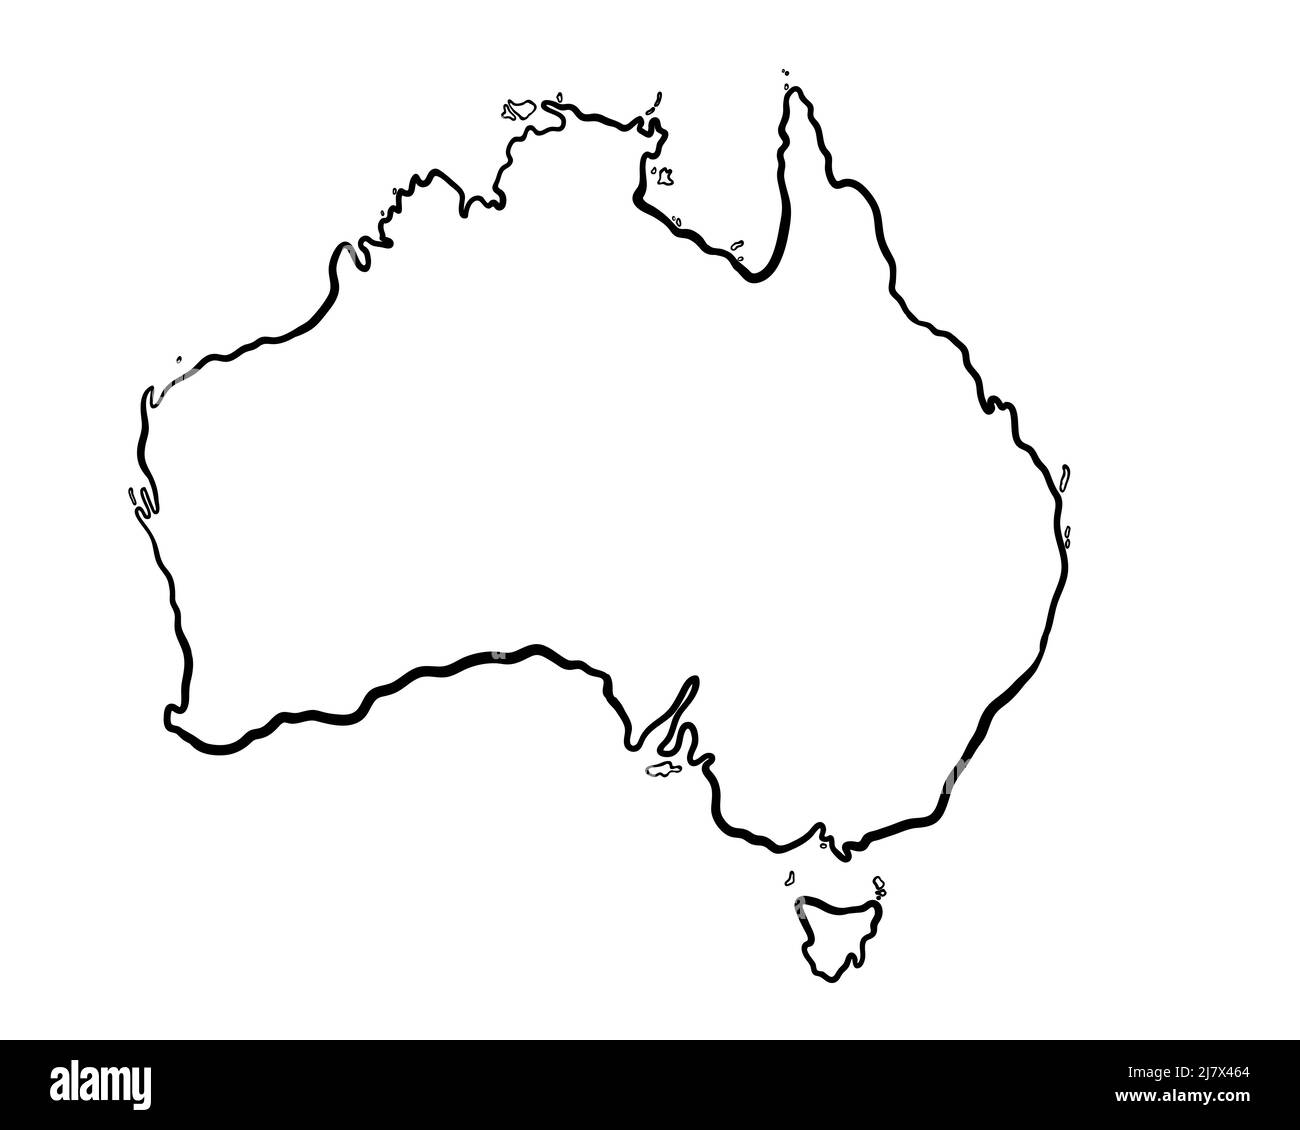 Australien - handgezeichnete Karte lllustration Stockfoto